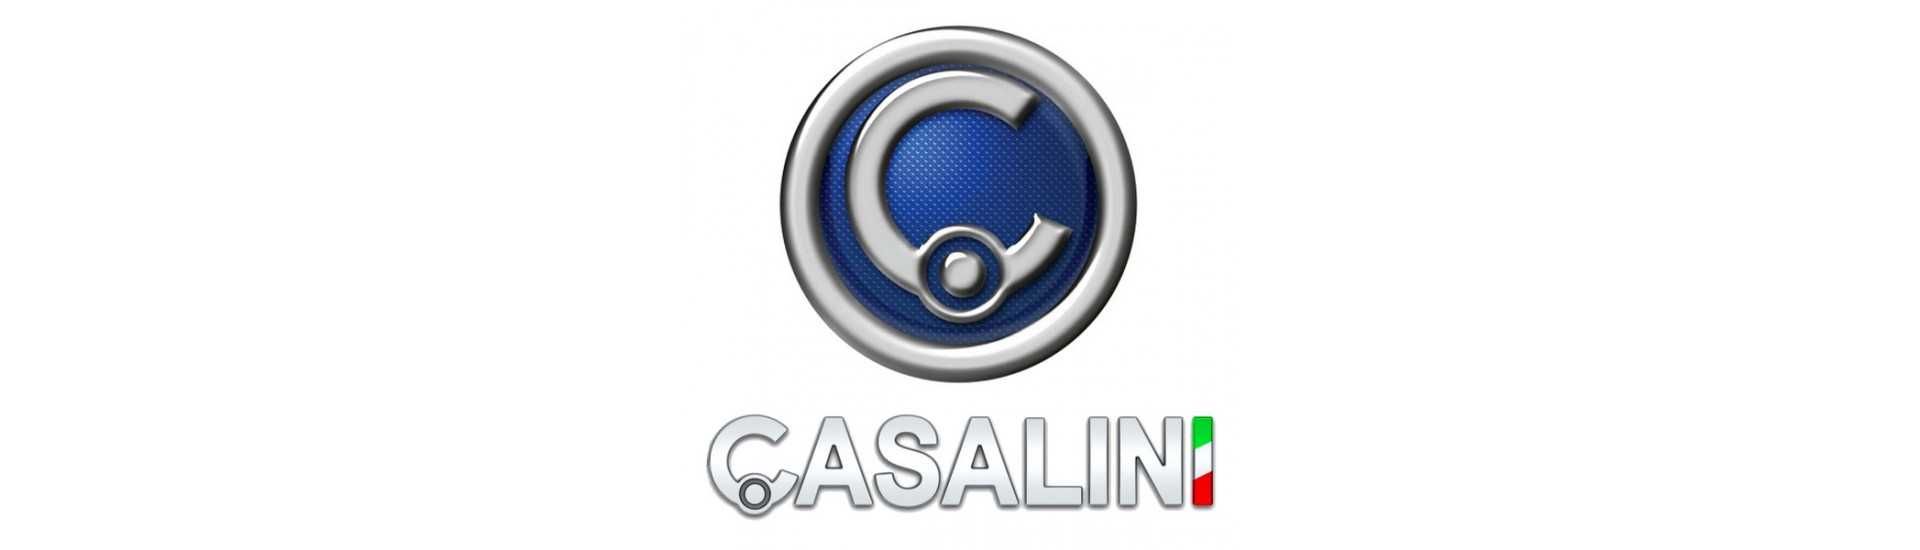 Cubo completo definido no melhor preço do carro sem uma permissão Casalini